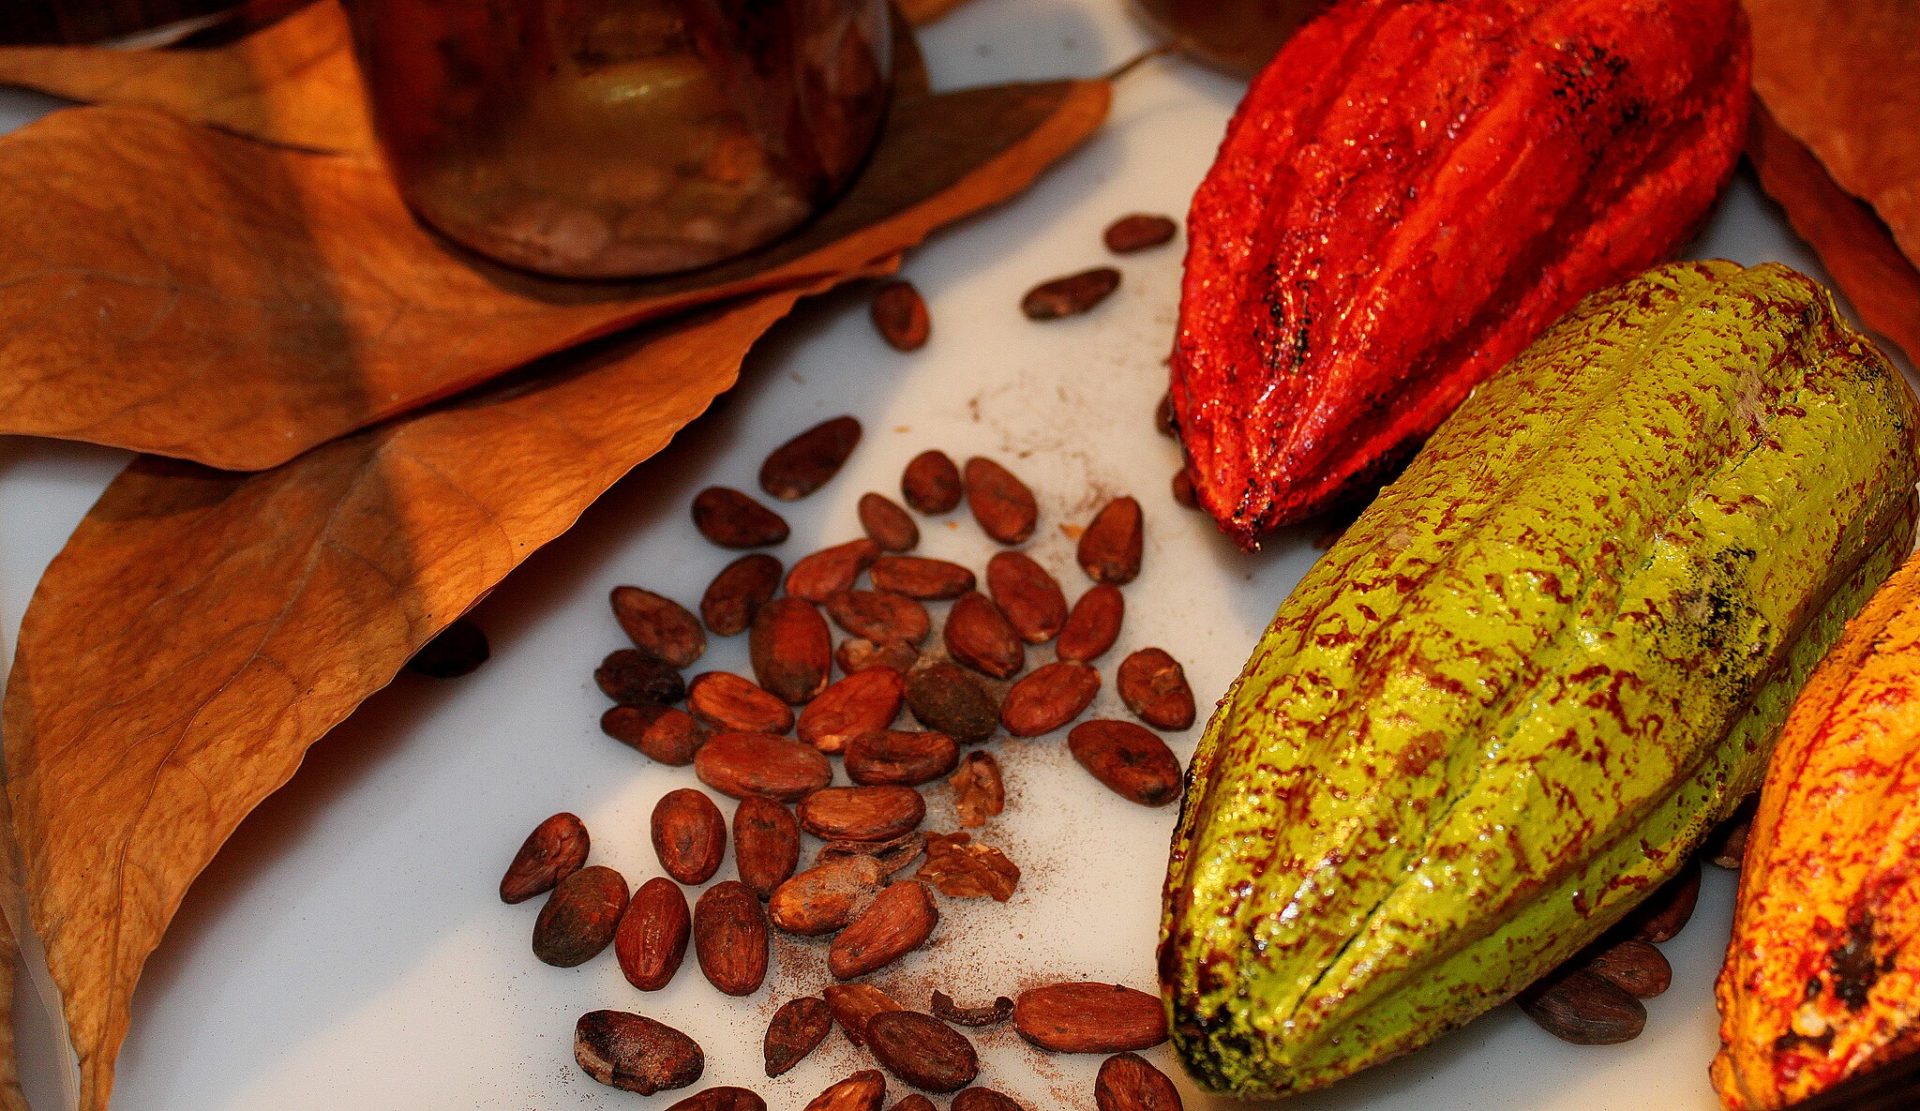 Kakaobohnen: Gesundheitliche Vorteile & Verwendung